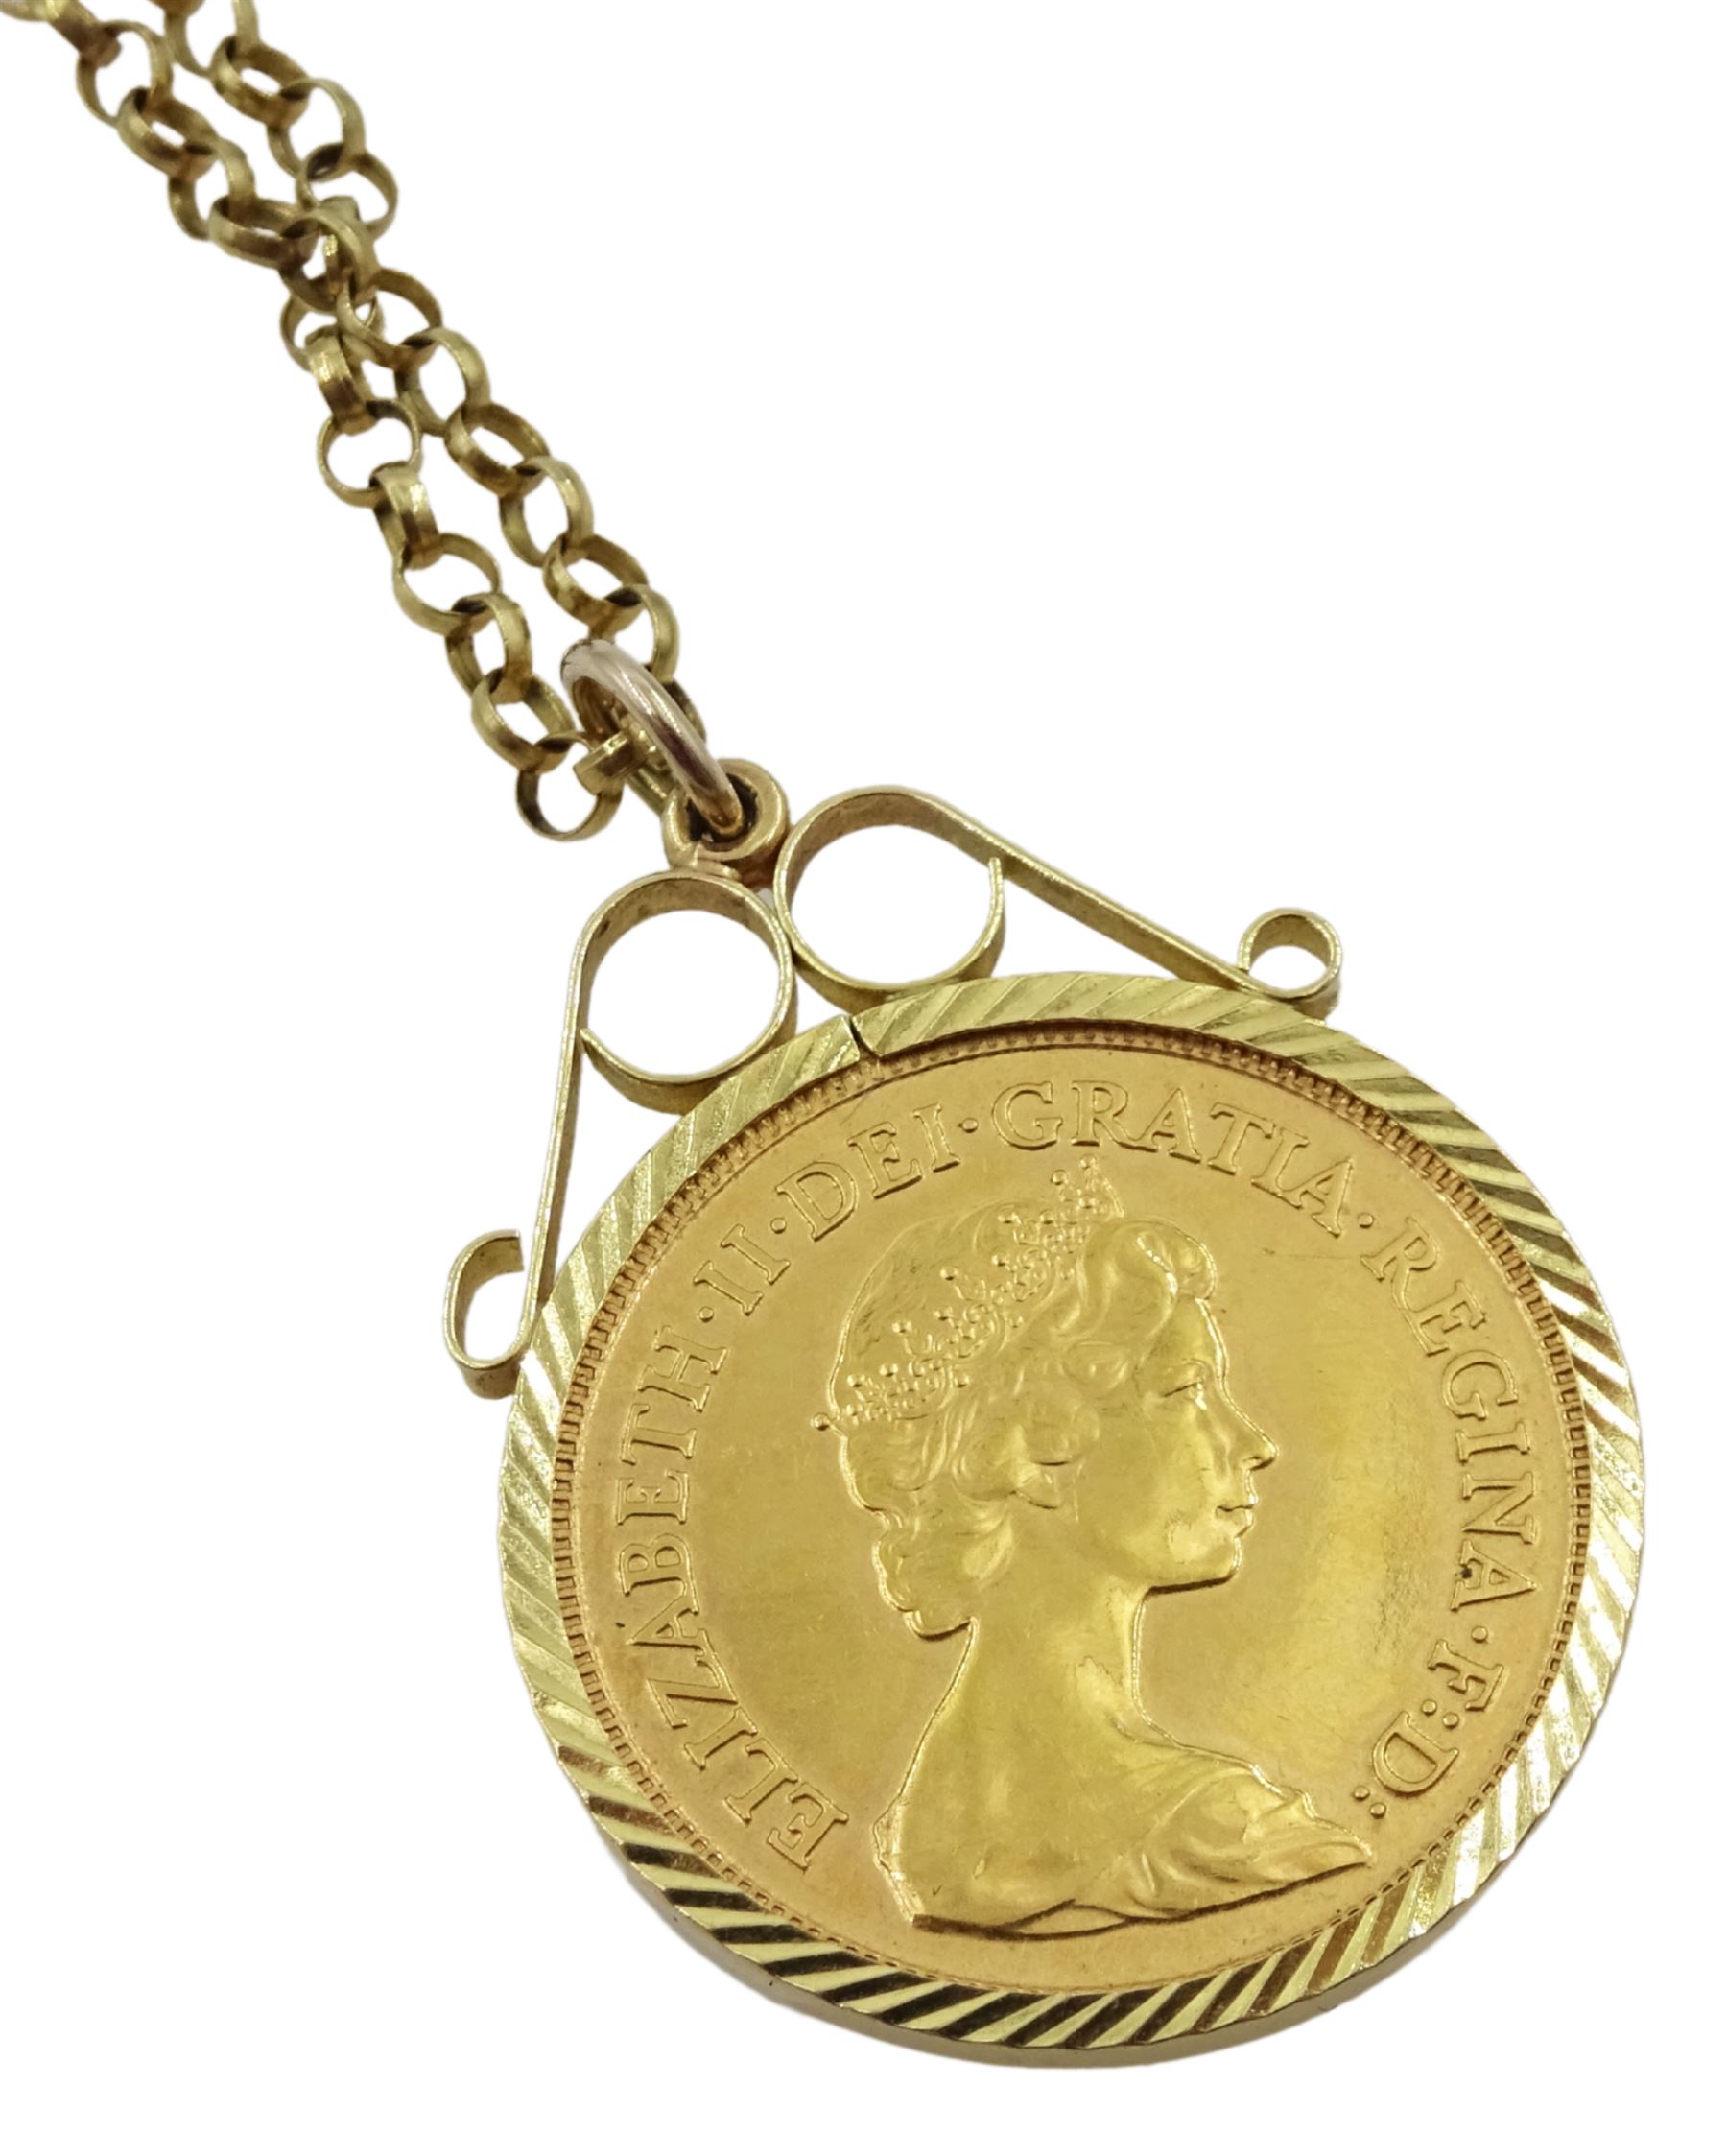 Elizabeth II 1982 gold half sovereign - Image 3 of 3